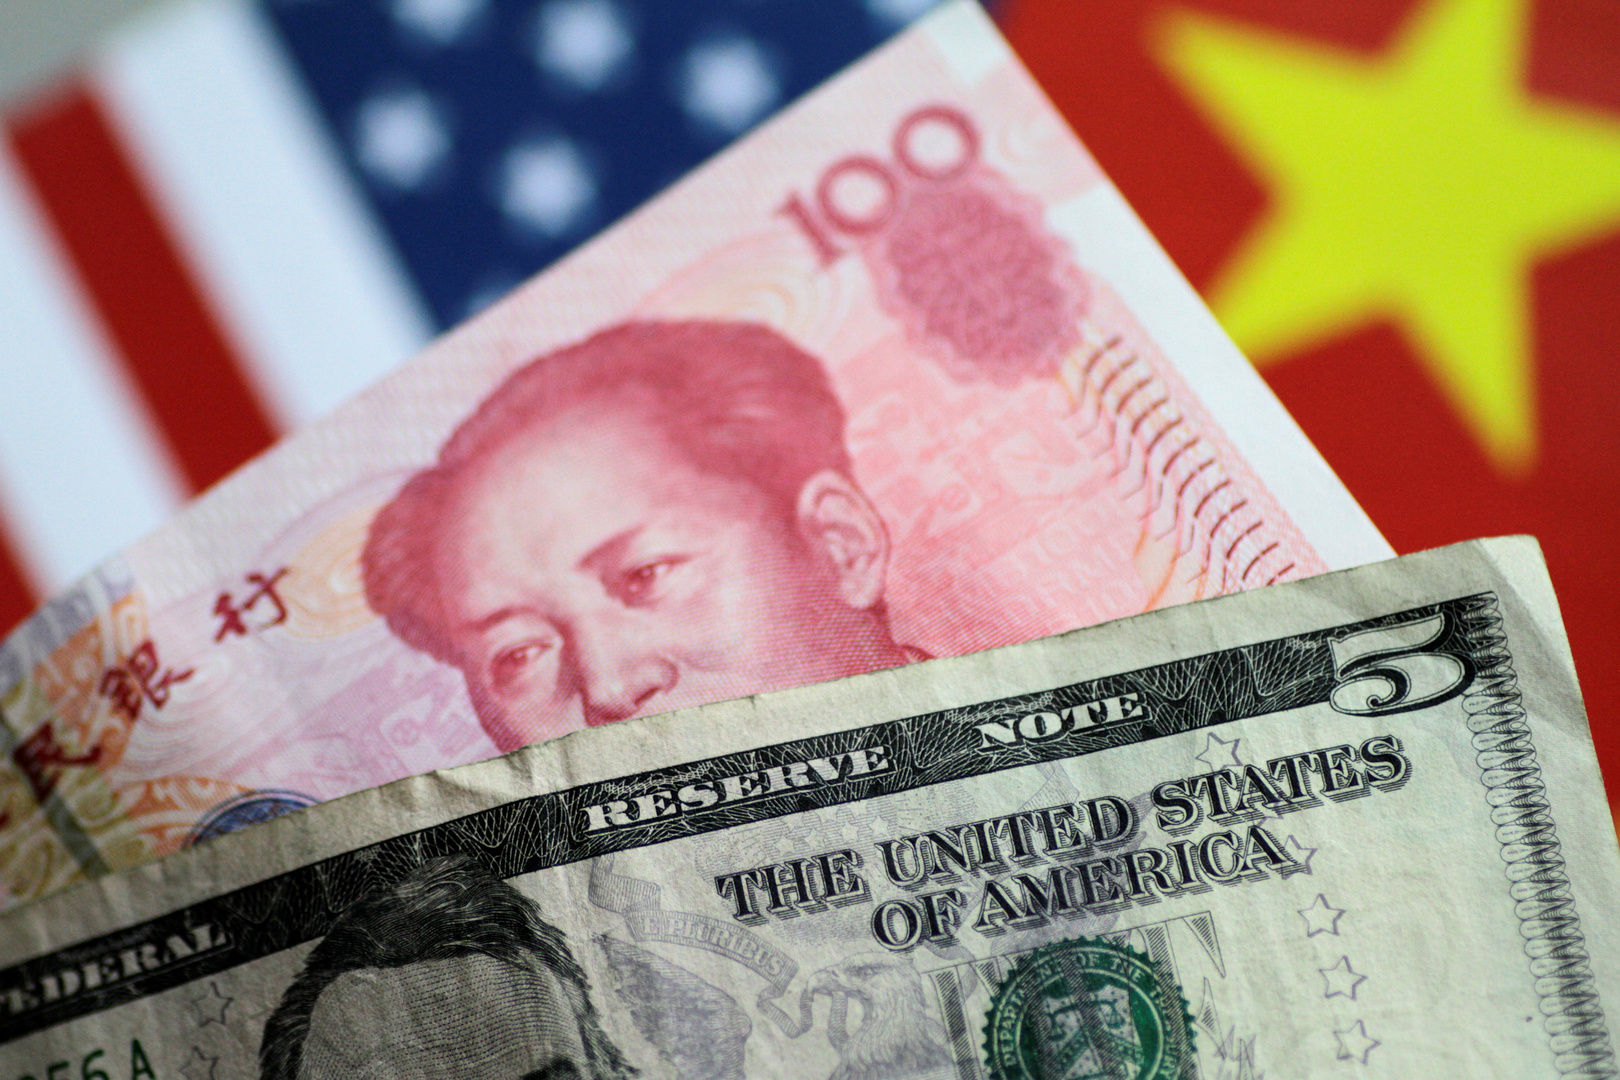 بلينكن حول الاستثمار الصيني في الغرب: علينا أن نكون حذرين للغاية